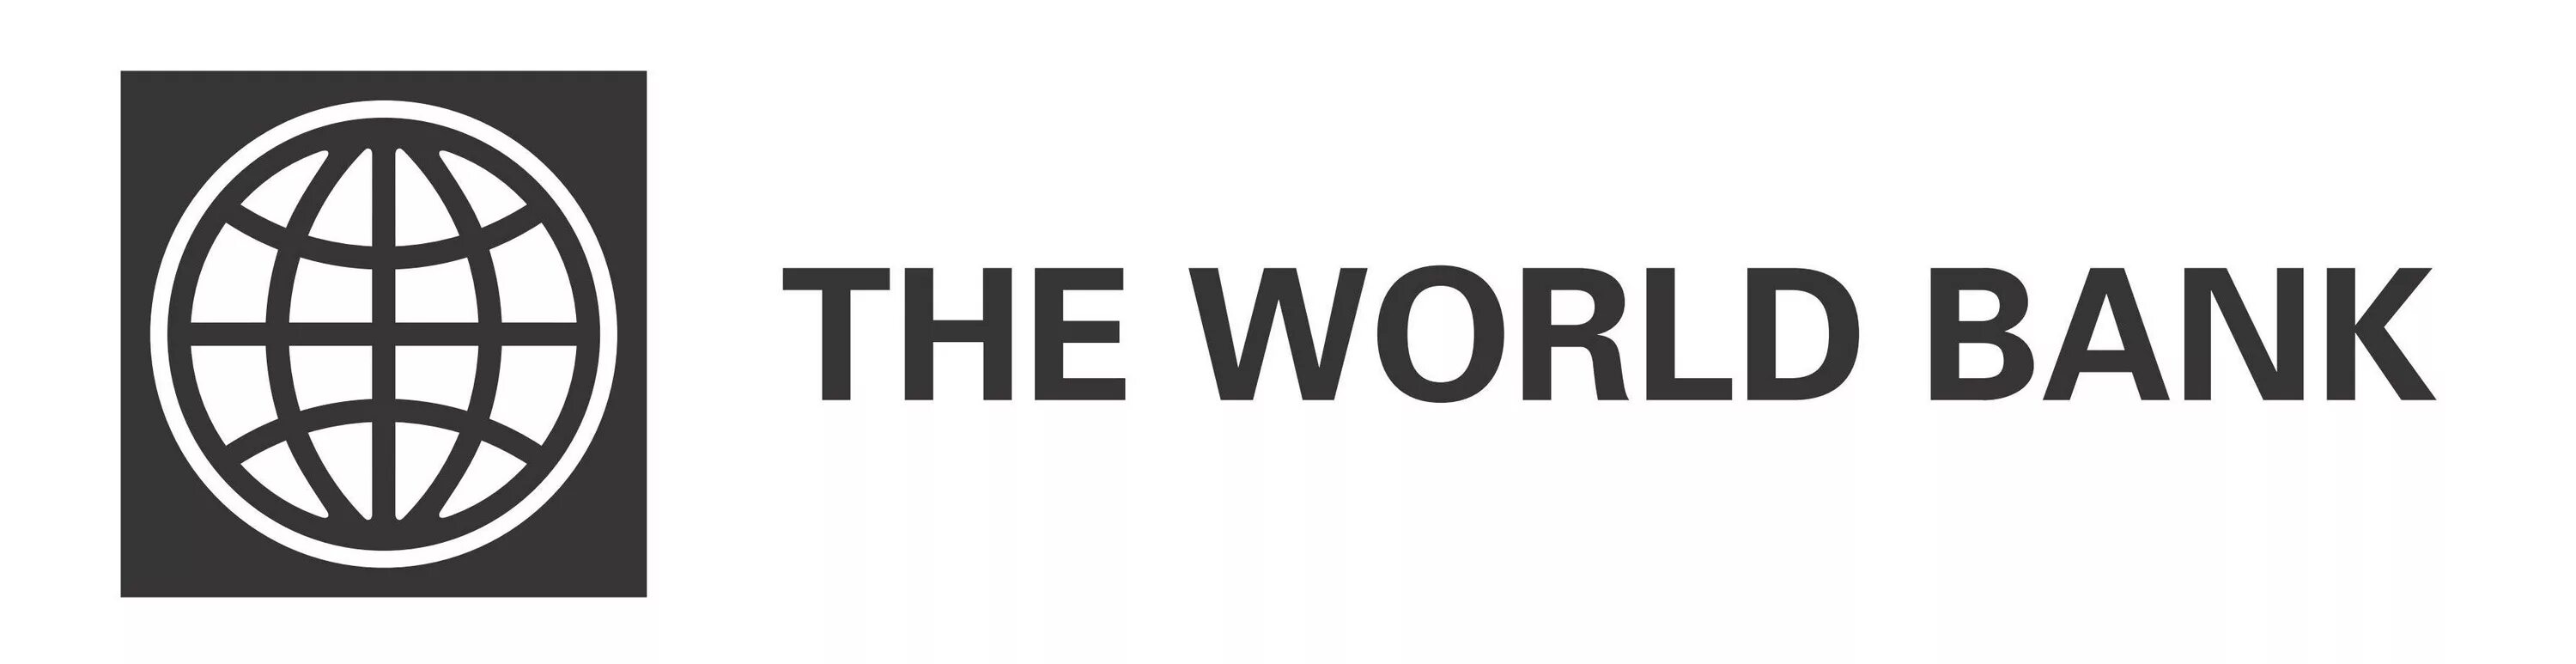 Сайт всемирного банка. Всемирный банк. Группа Всемирного банка лого. Всемирный банк значок. Логотипы Мировых банков.